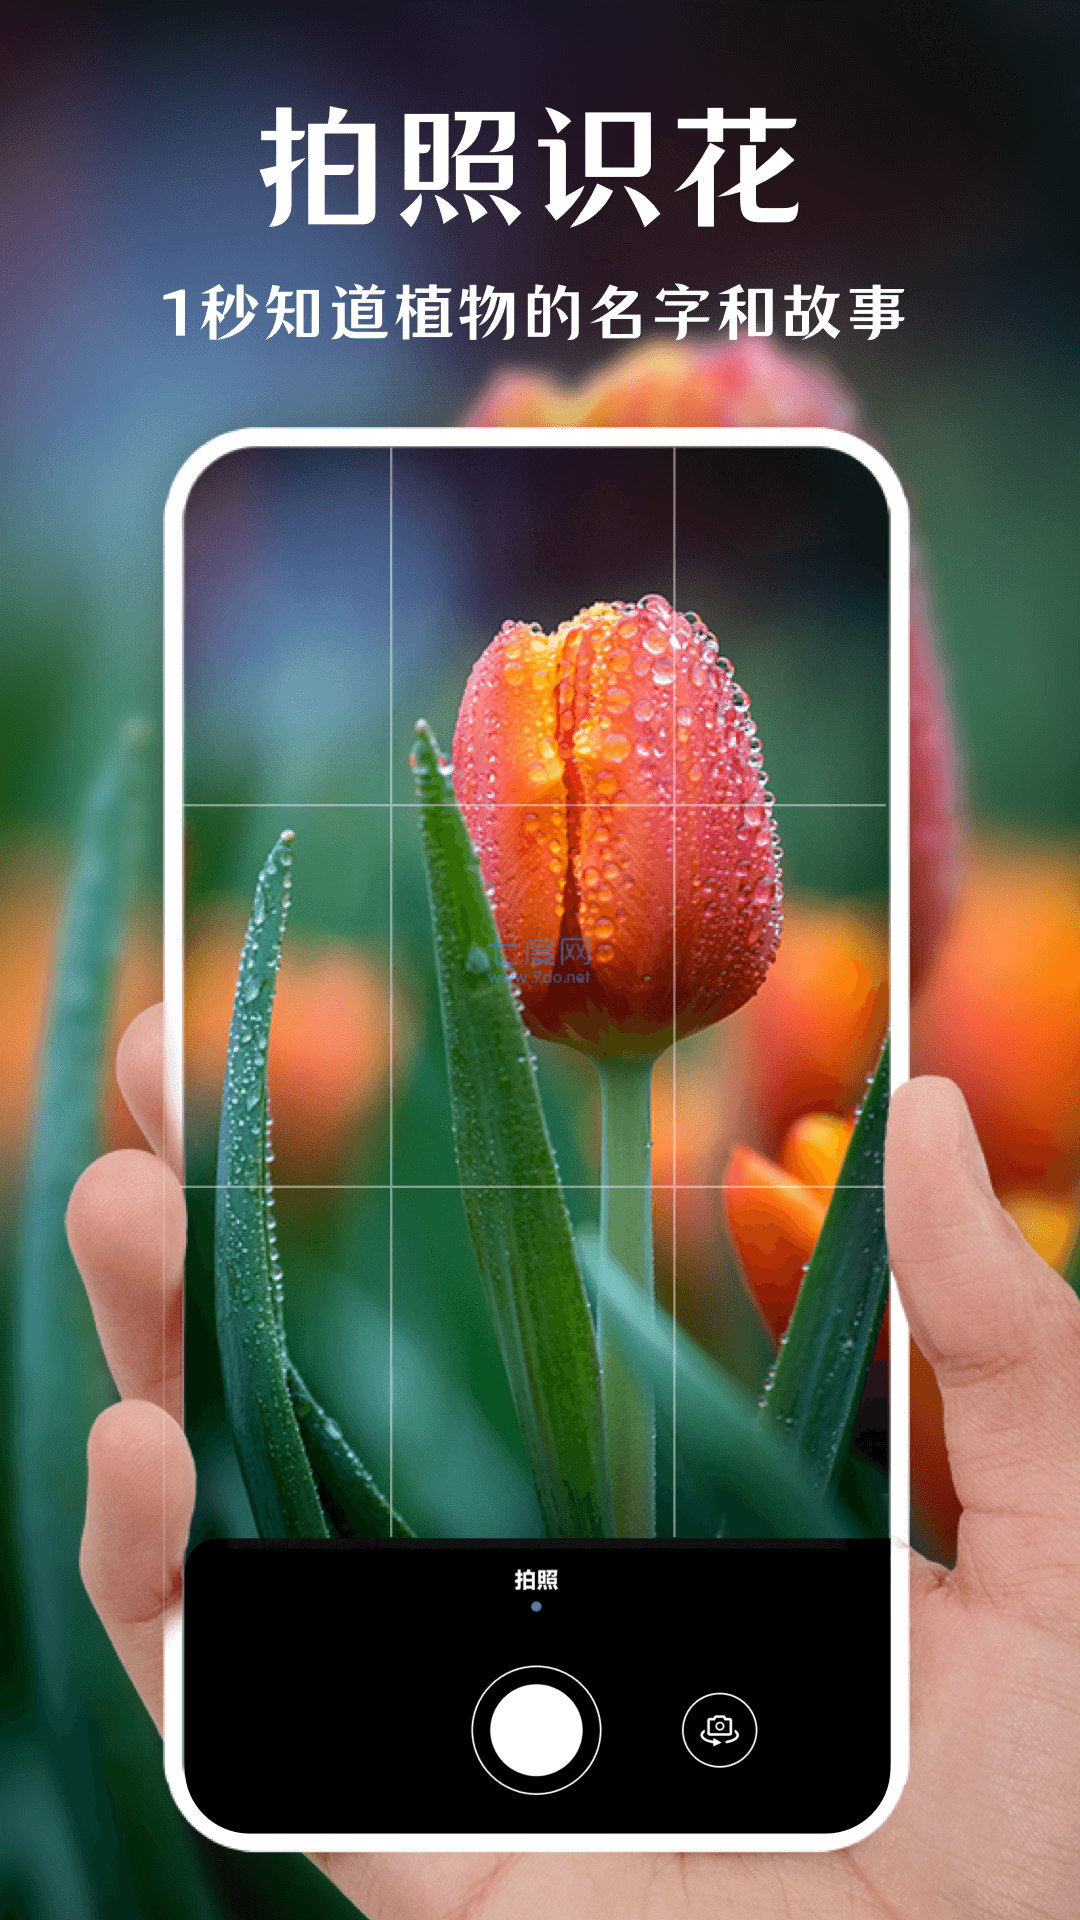 一键拍照识花app功能● 拍照识别:一键拍照,只需数秒,即可完成植物